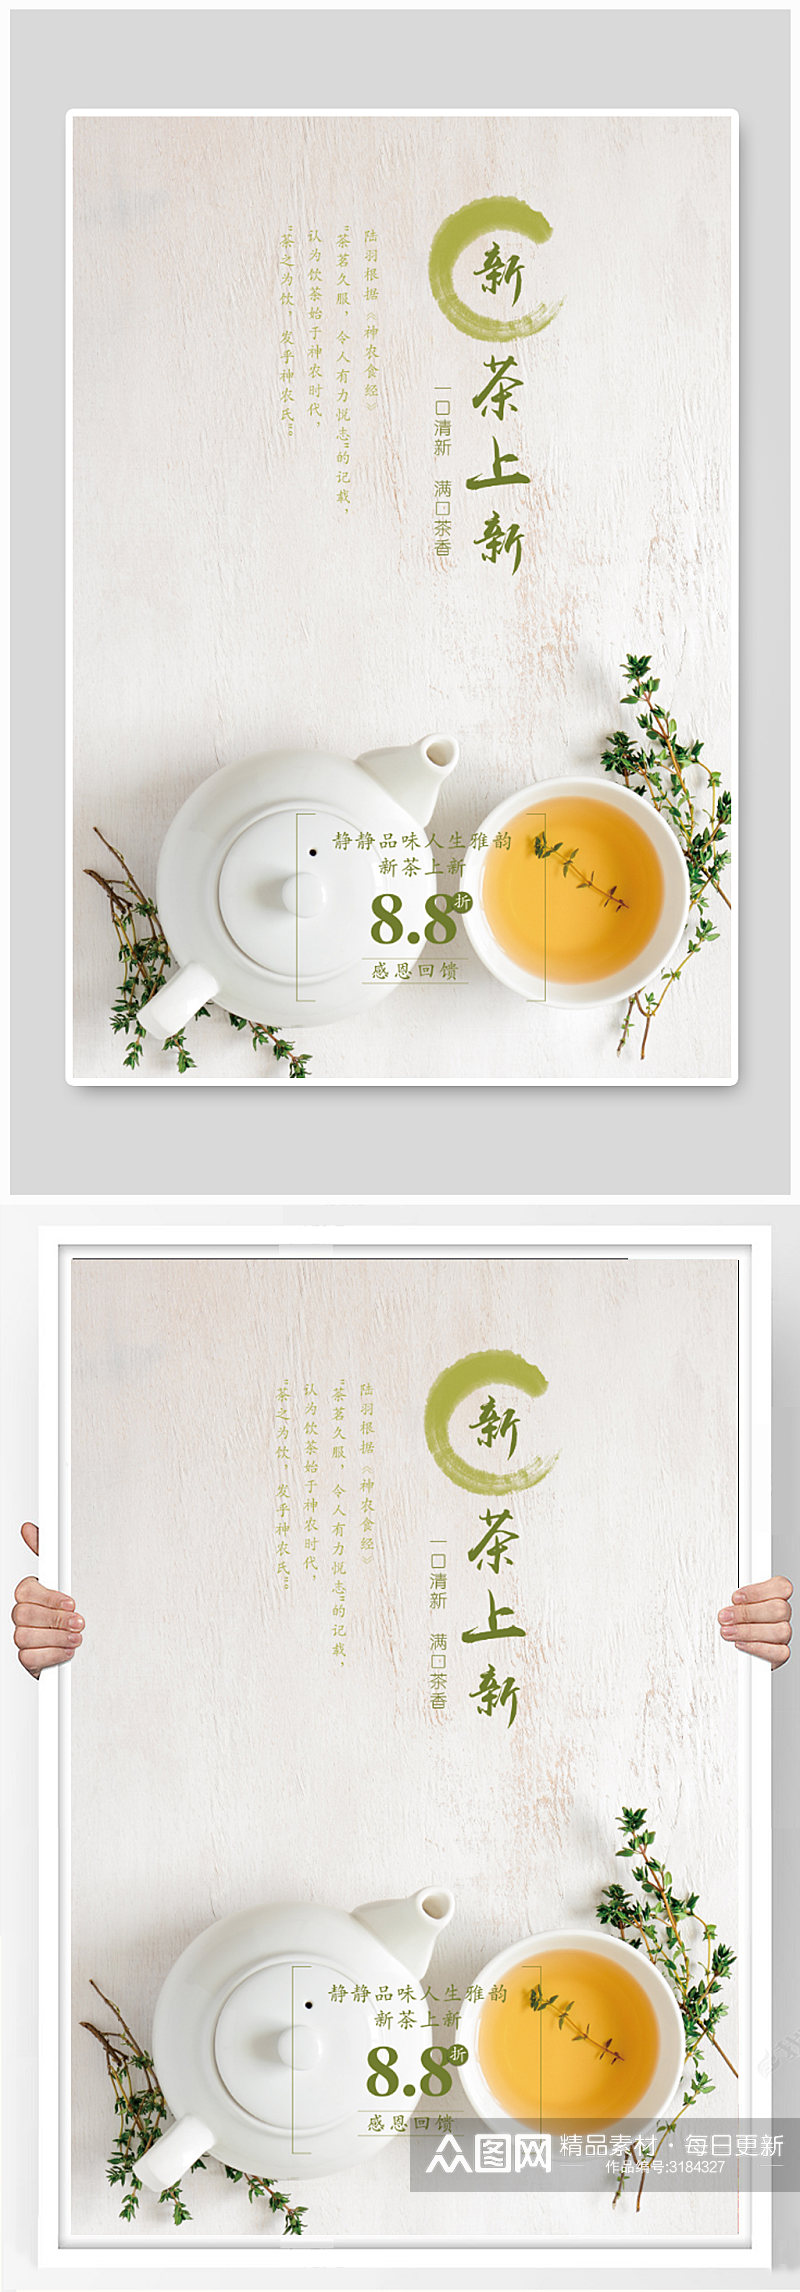 绿色清新中国风茶上新促销海报素材